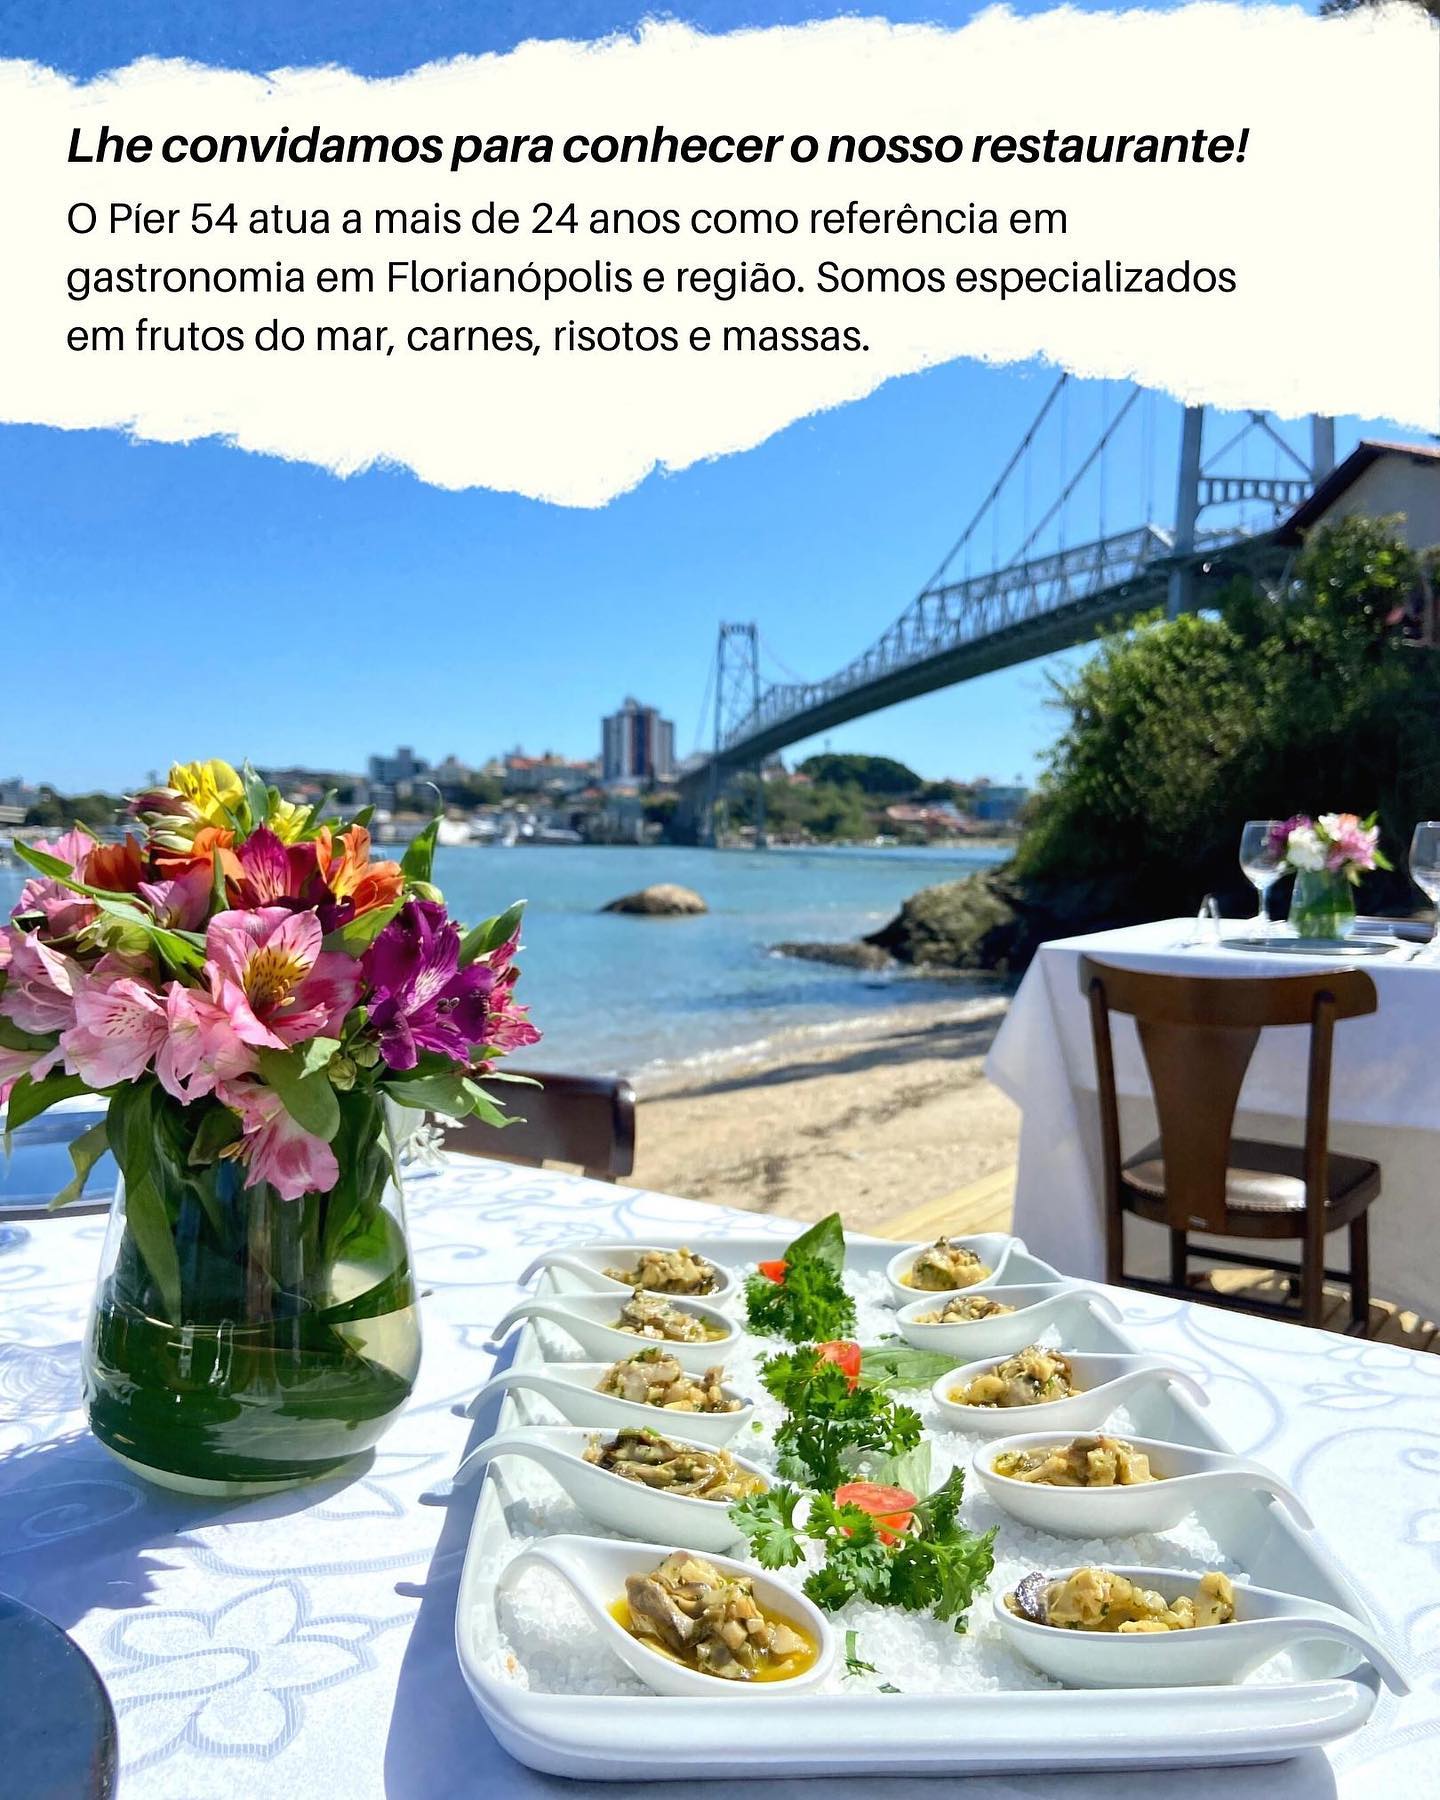 Visite _pier54restaurante_ Estamos localizados aos braços da Ponte Hercílio Luz(image2)